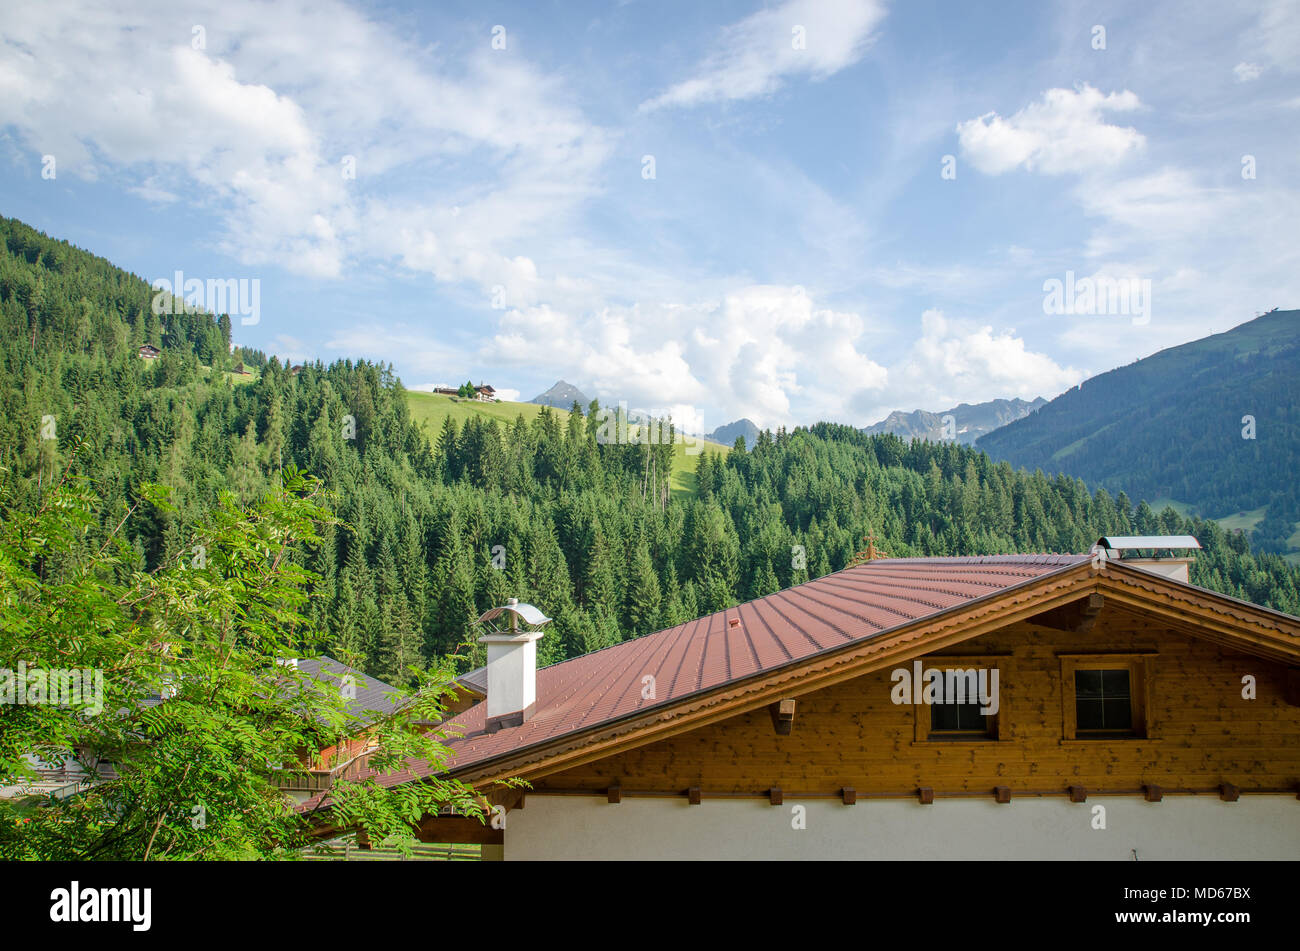 Tirol, Austria, Europe, travel destination Stock Photo